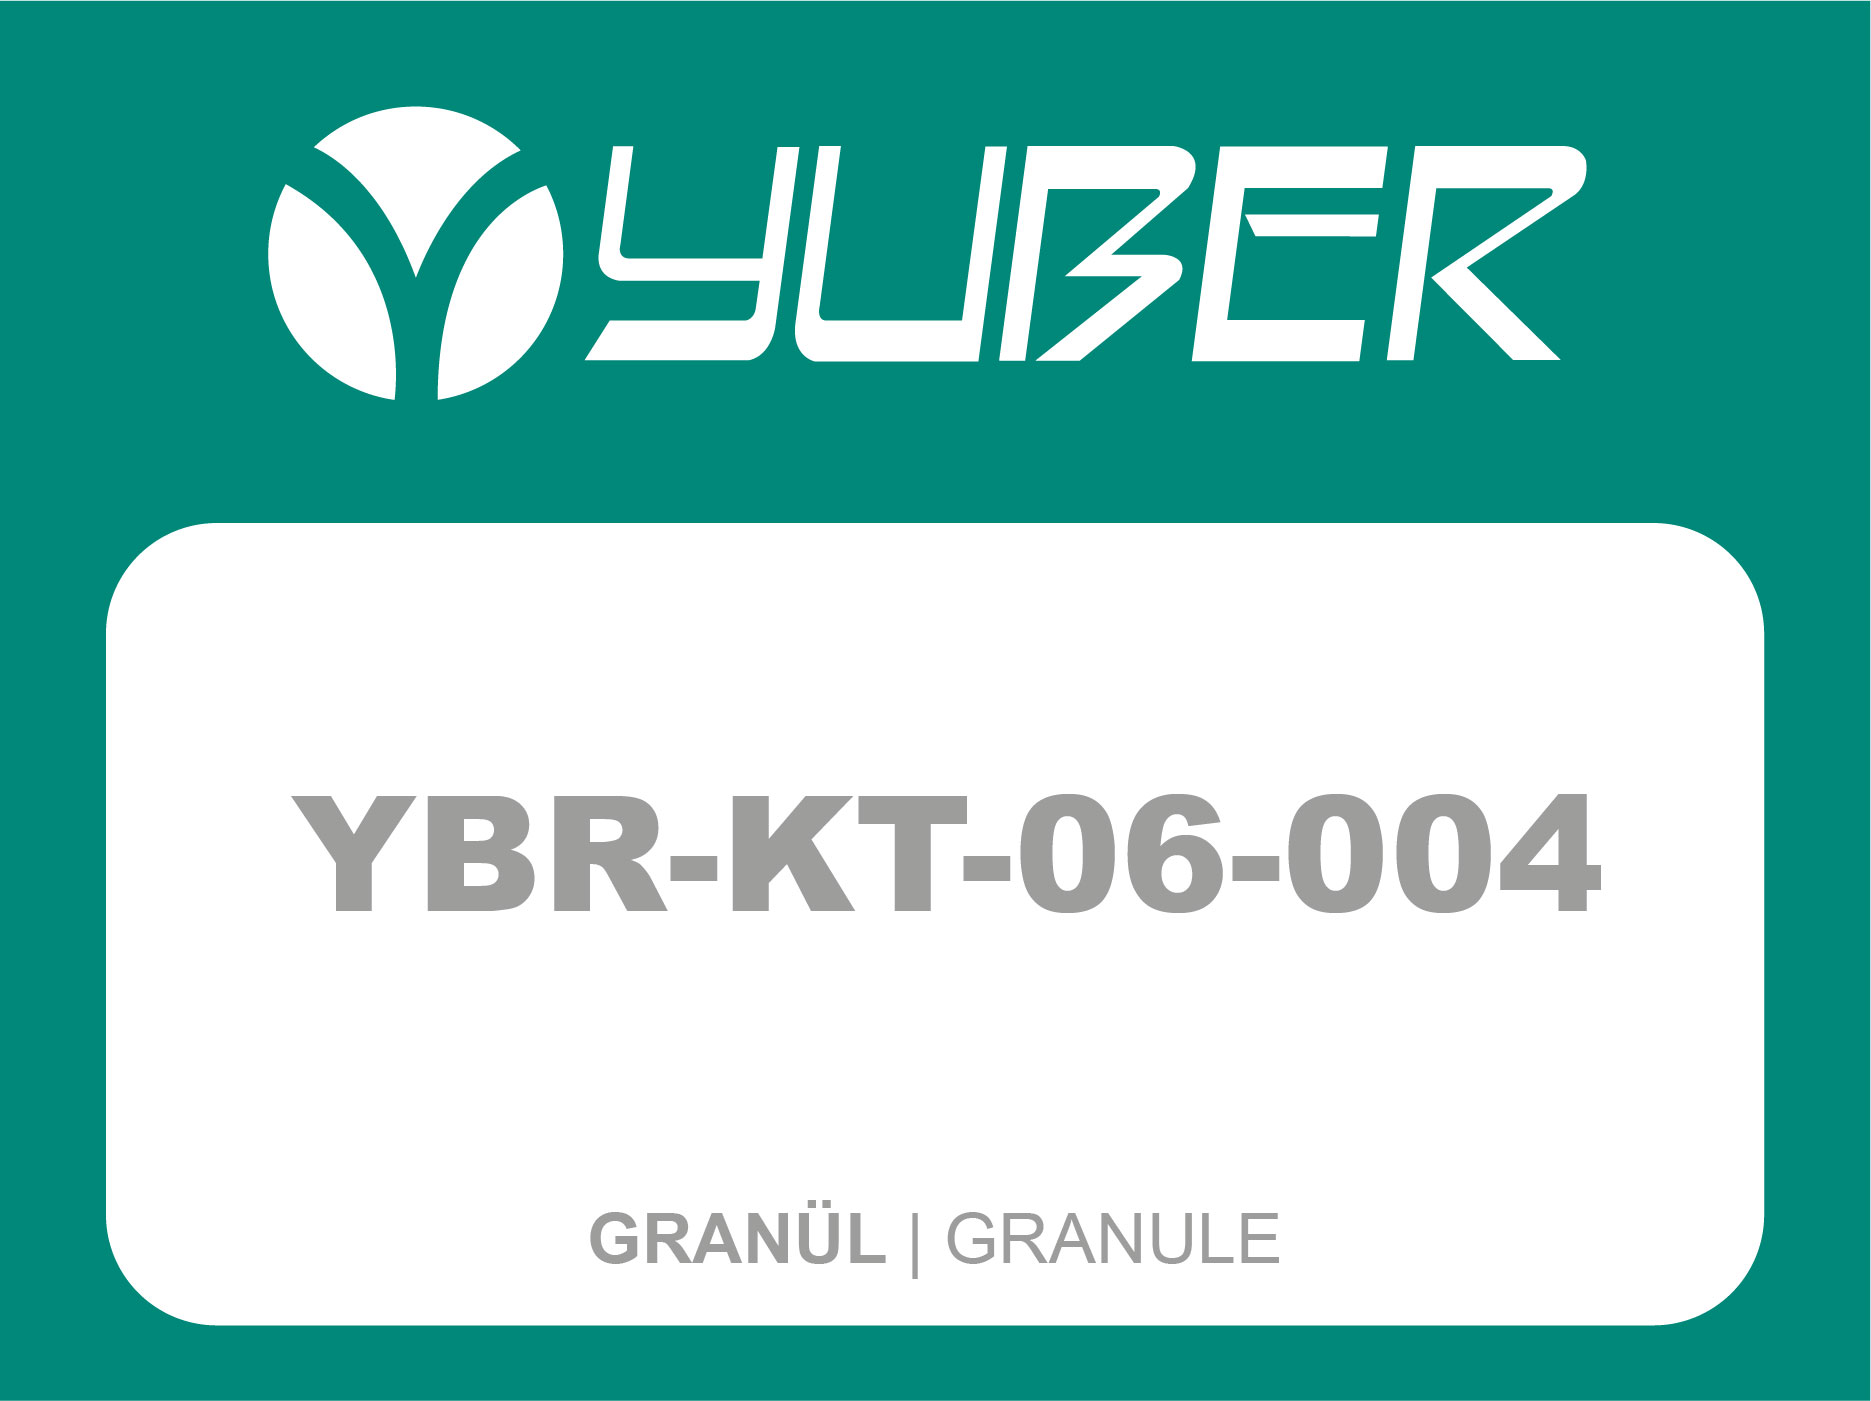 YBR KT 06 004 Granül Yuber Metalurji